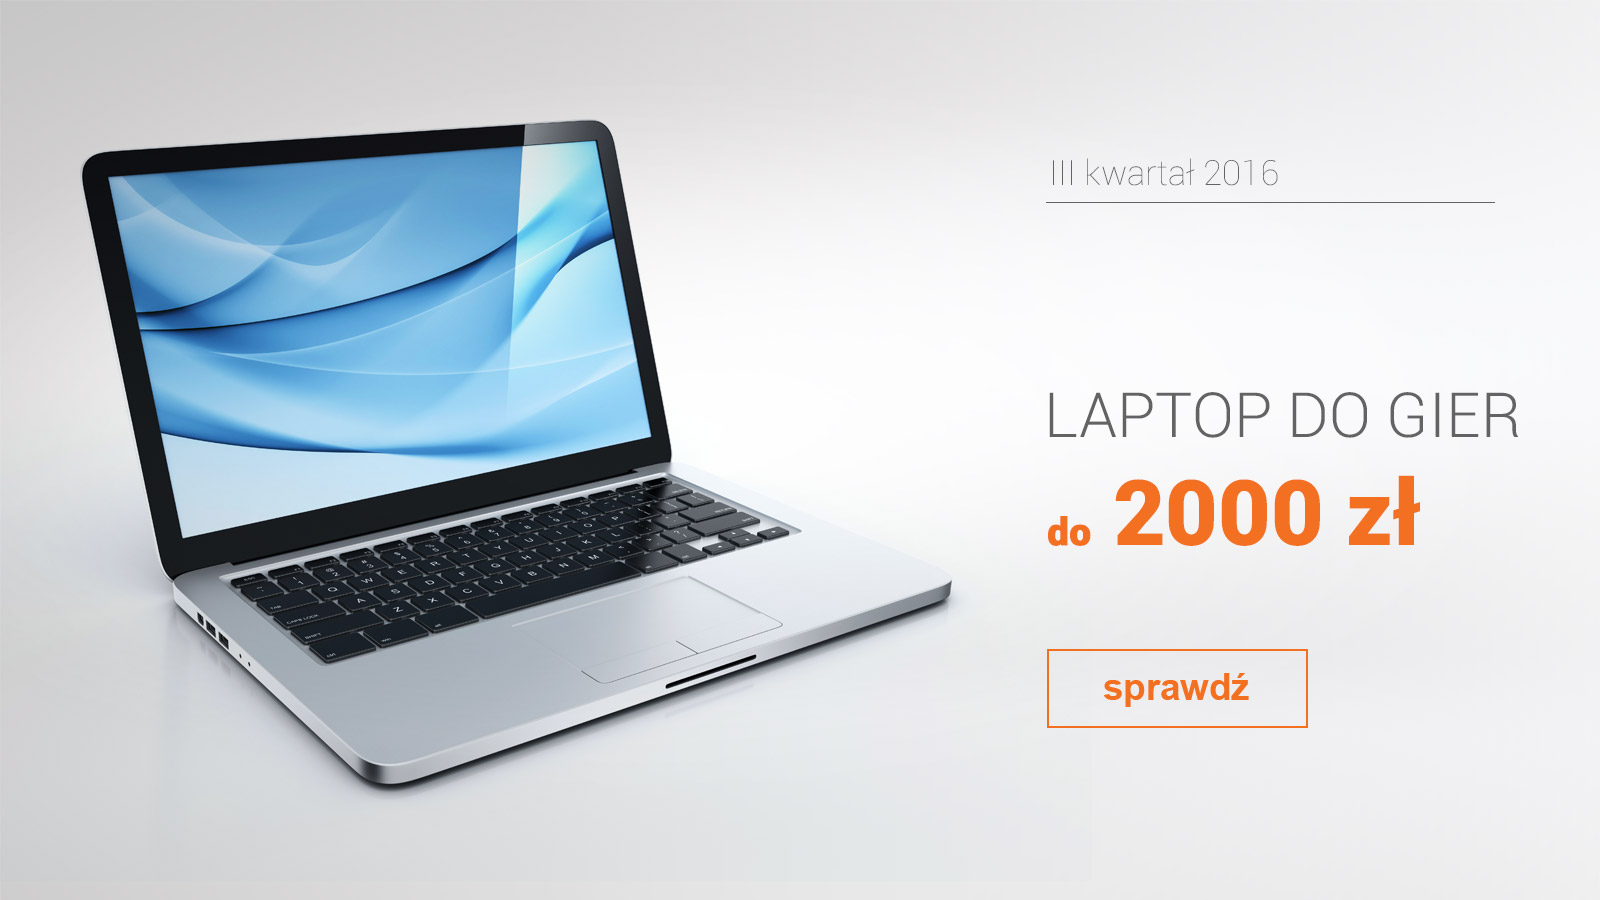 Laptop Do Gier Do 2000 Zl Iii Kwartal 2016 Allegro Pl